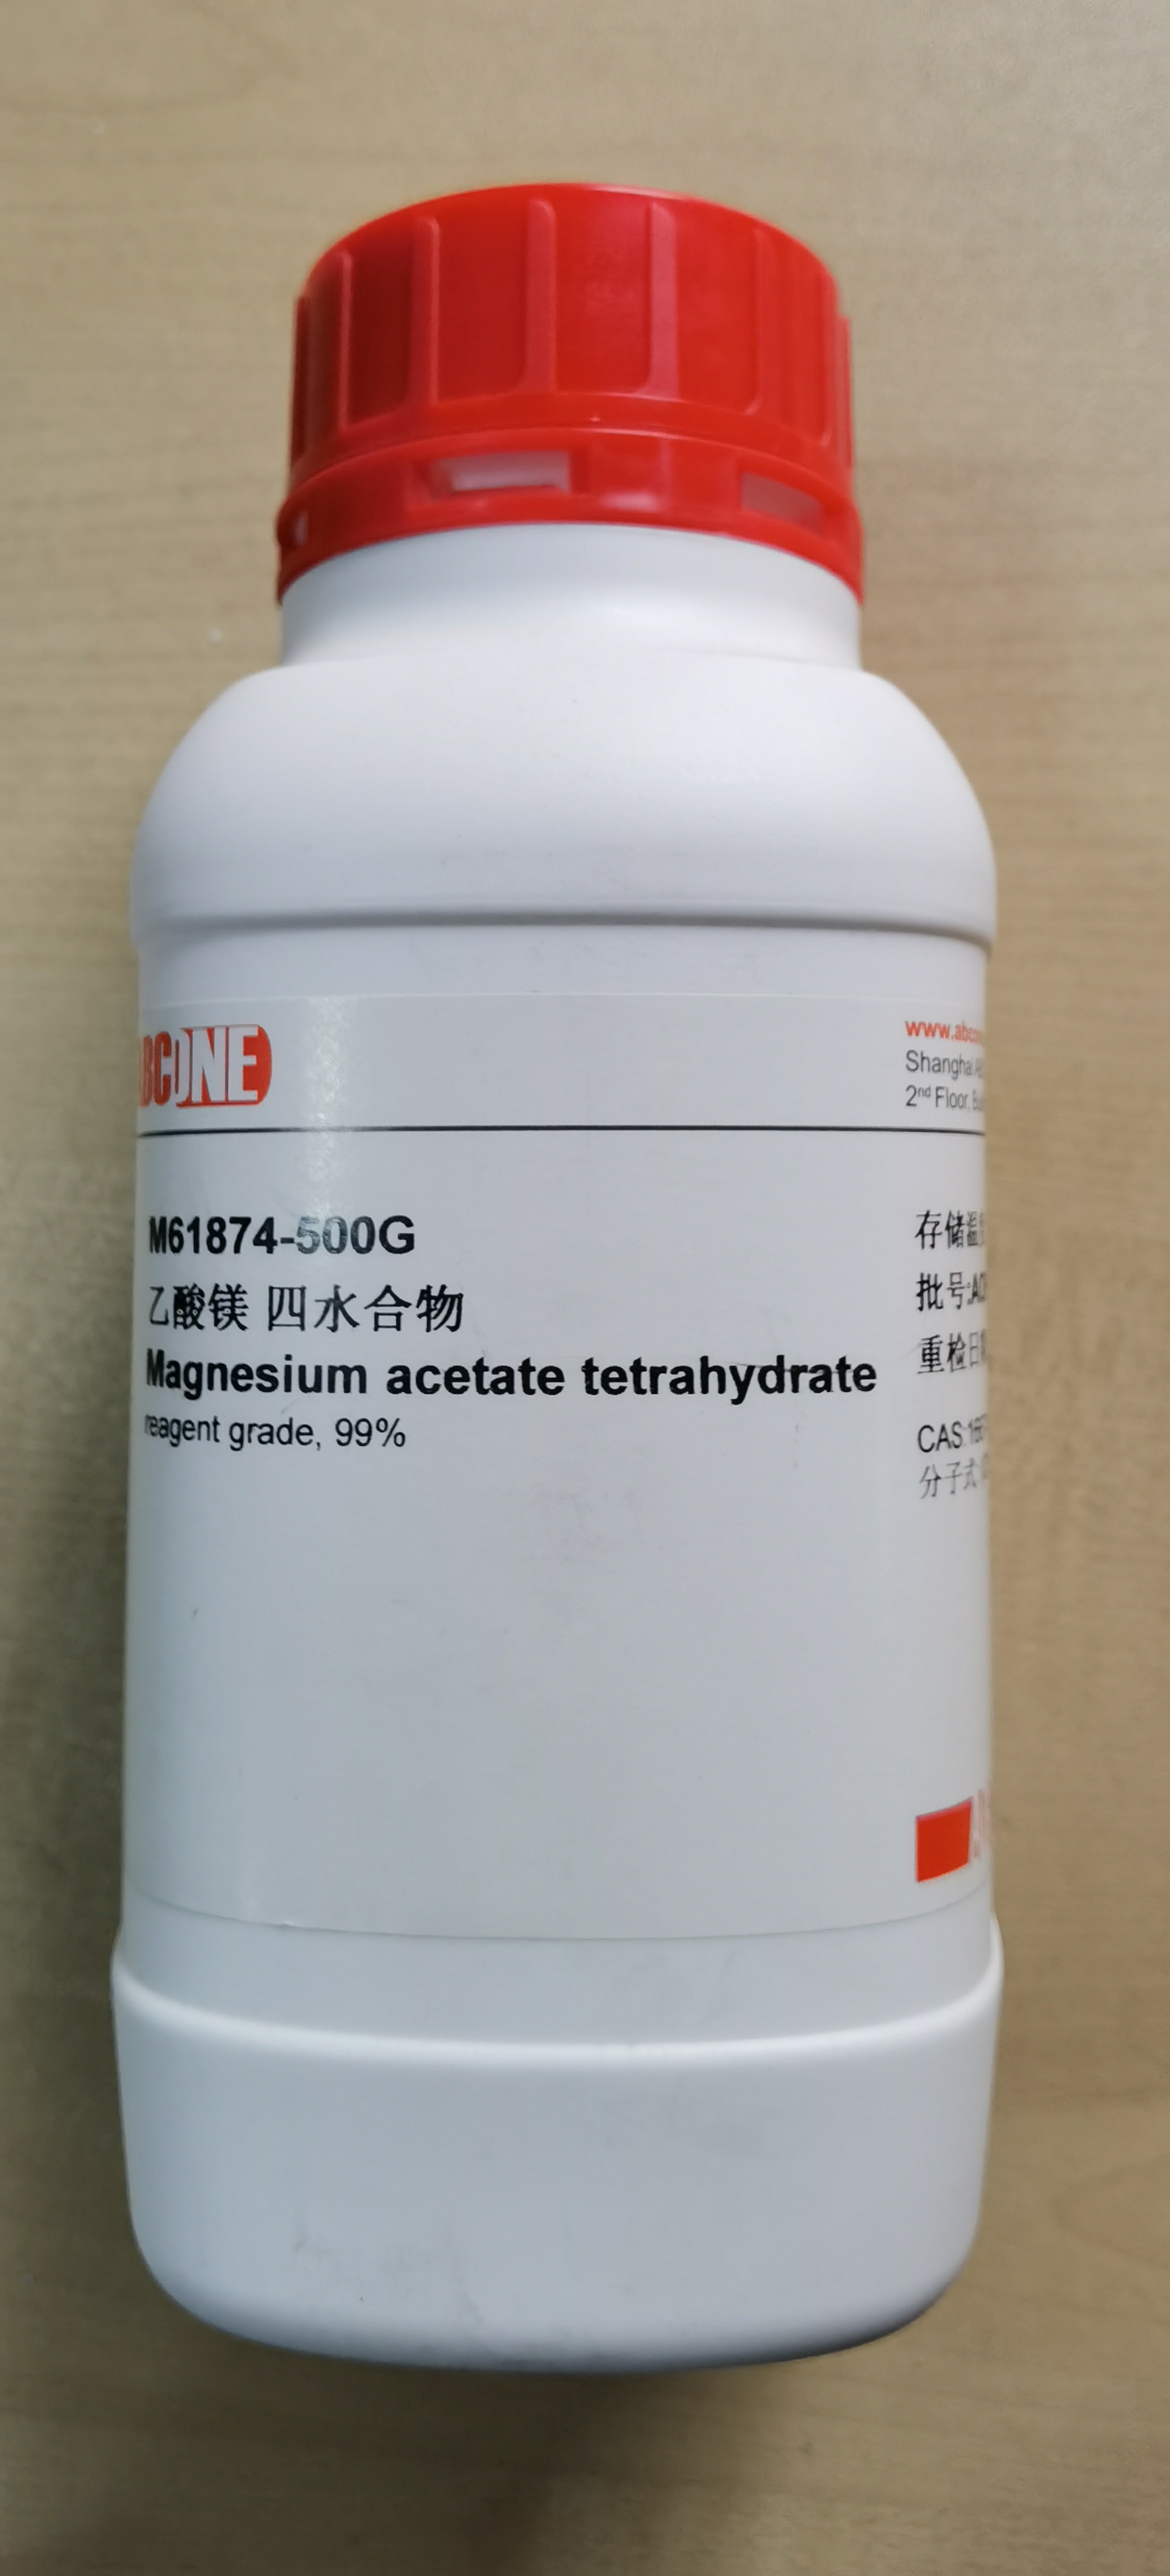 M61874 , Magnesium acetate tetrahydrate ,乙酸镁 四水合物